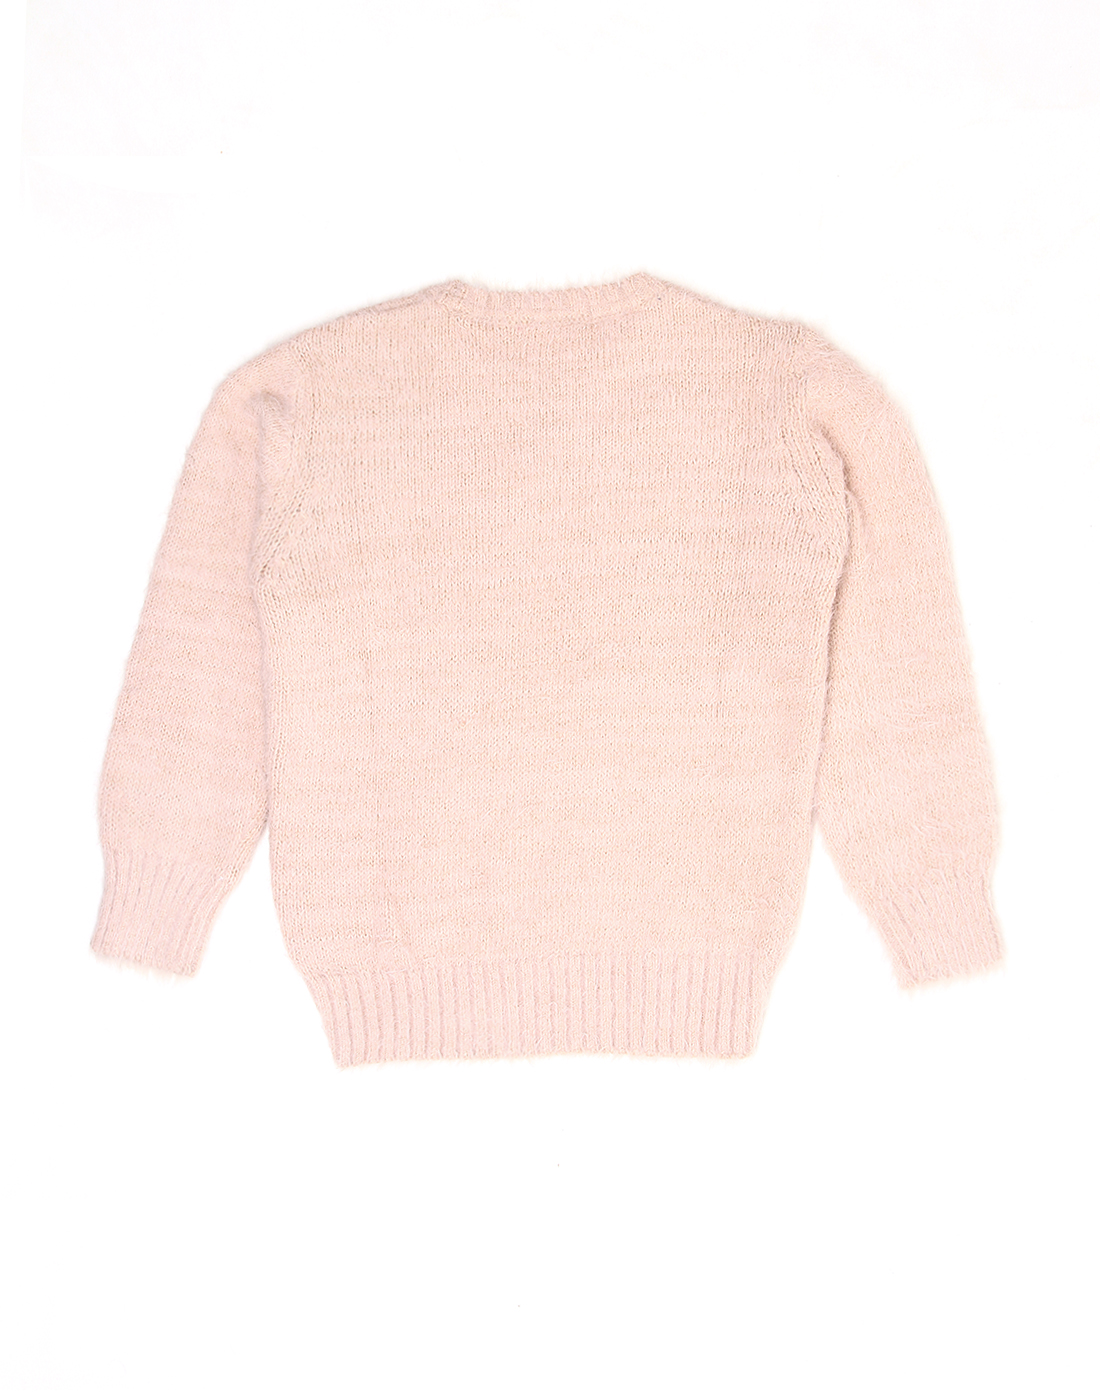 Wingsfield Girls Pink Sweater